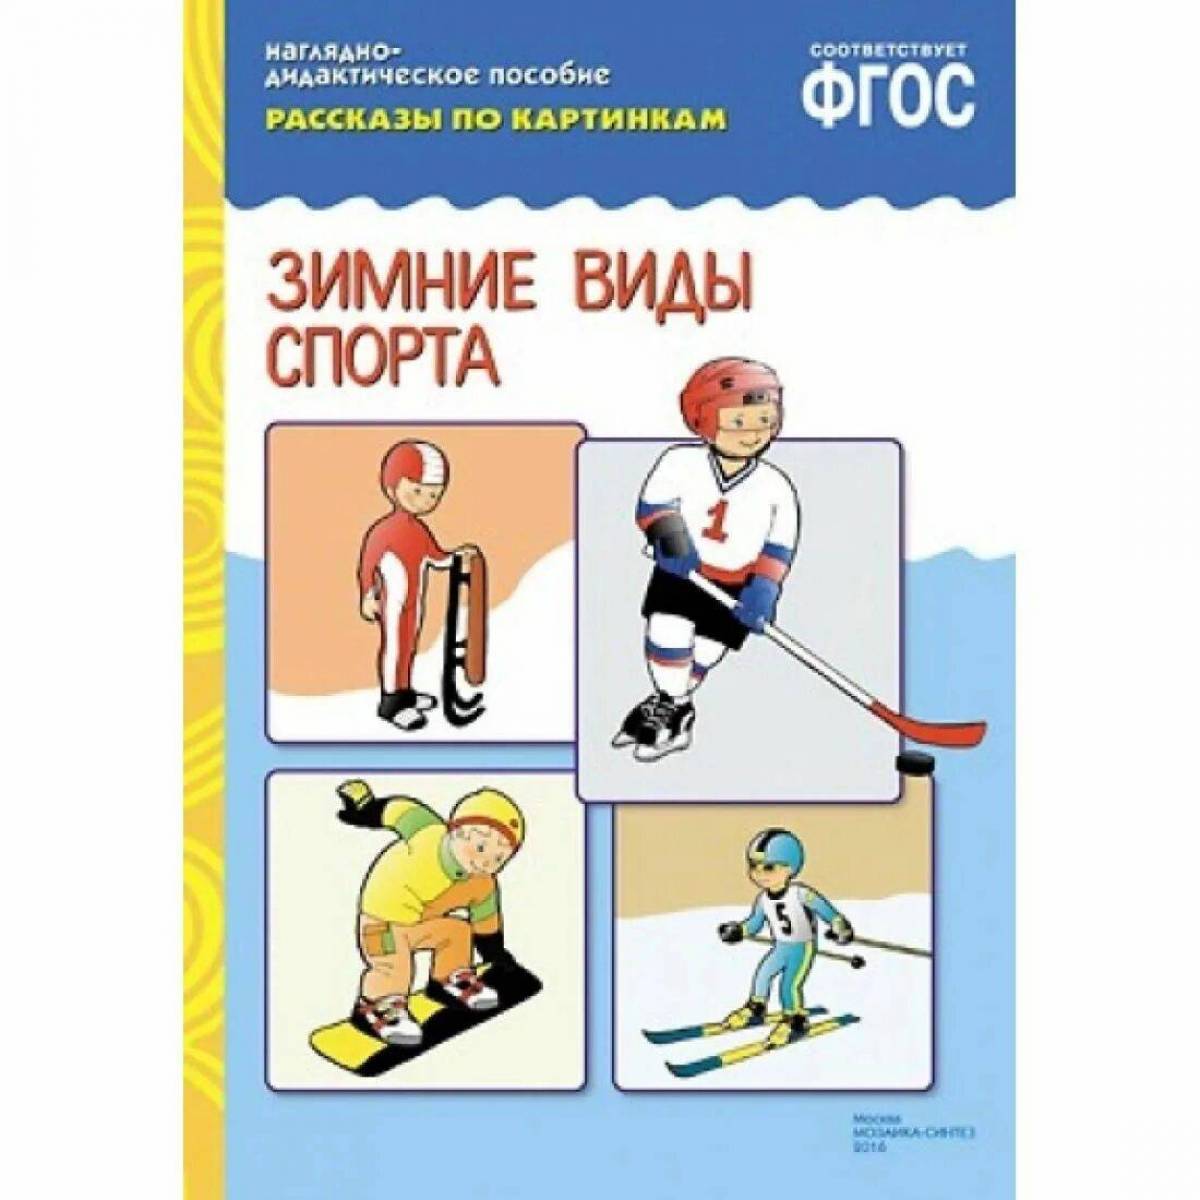 Зимние виды спорта для детского сада #30